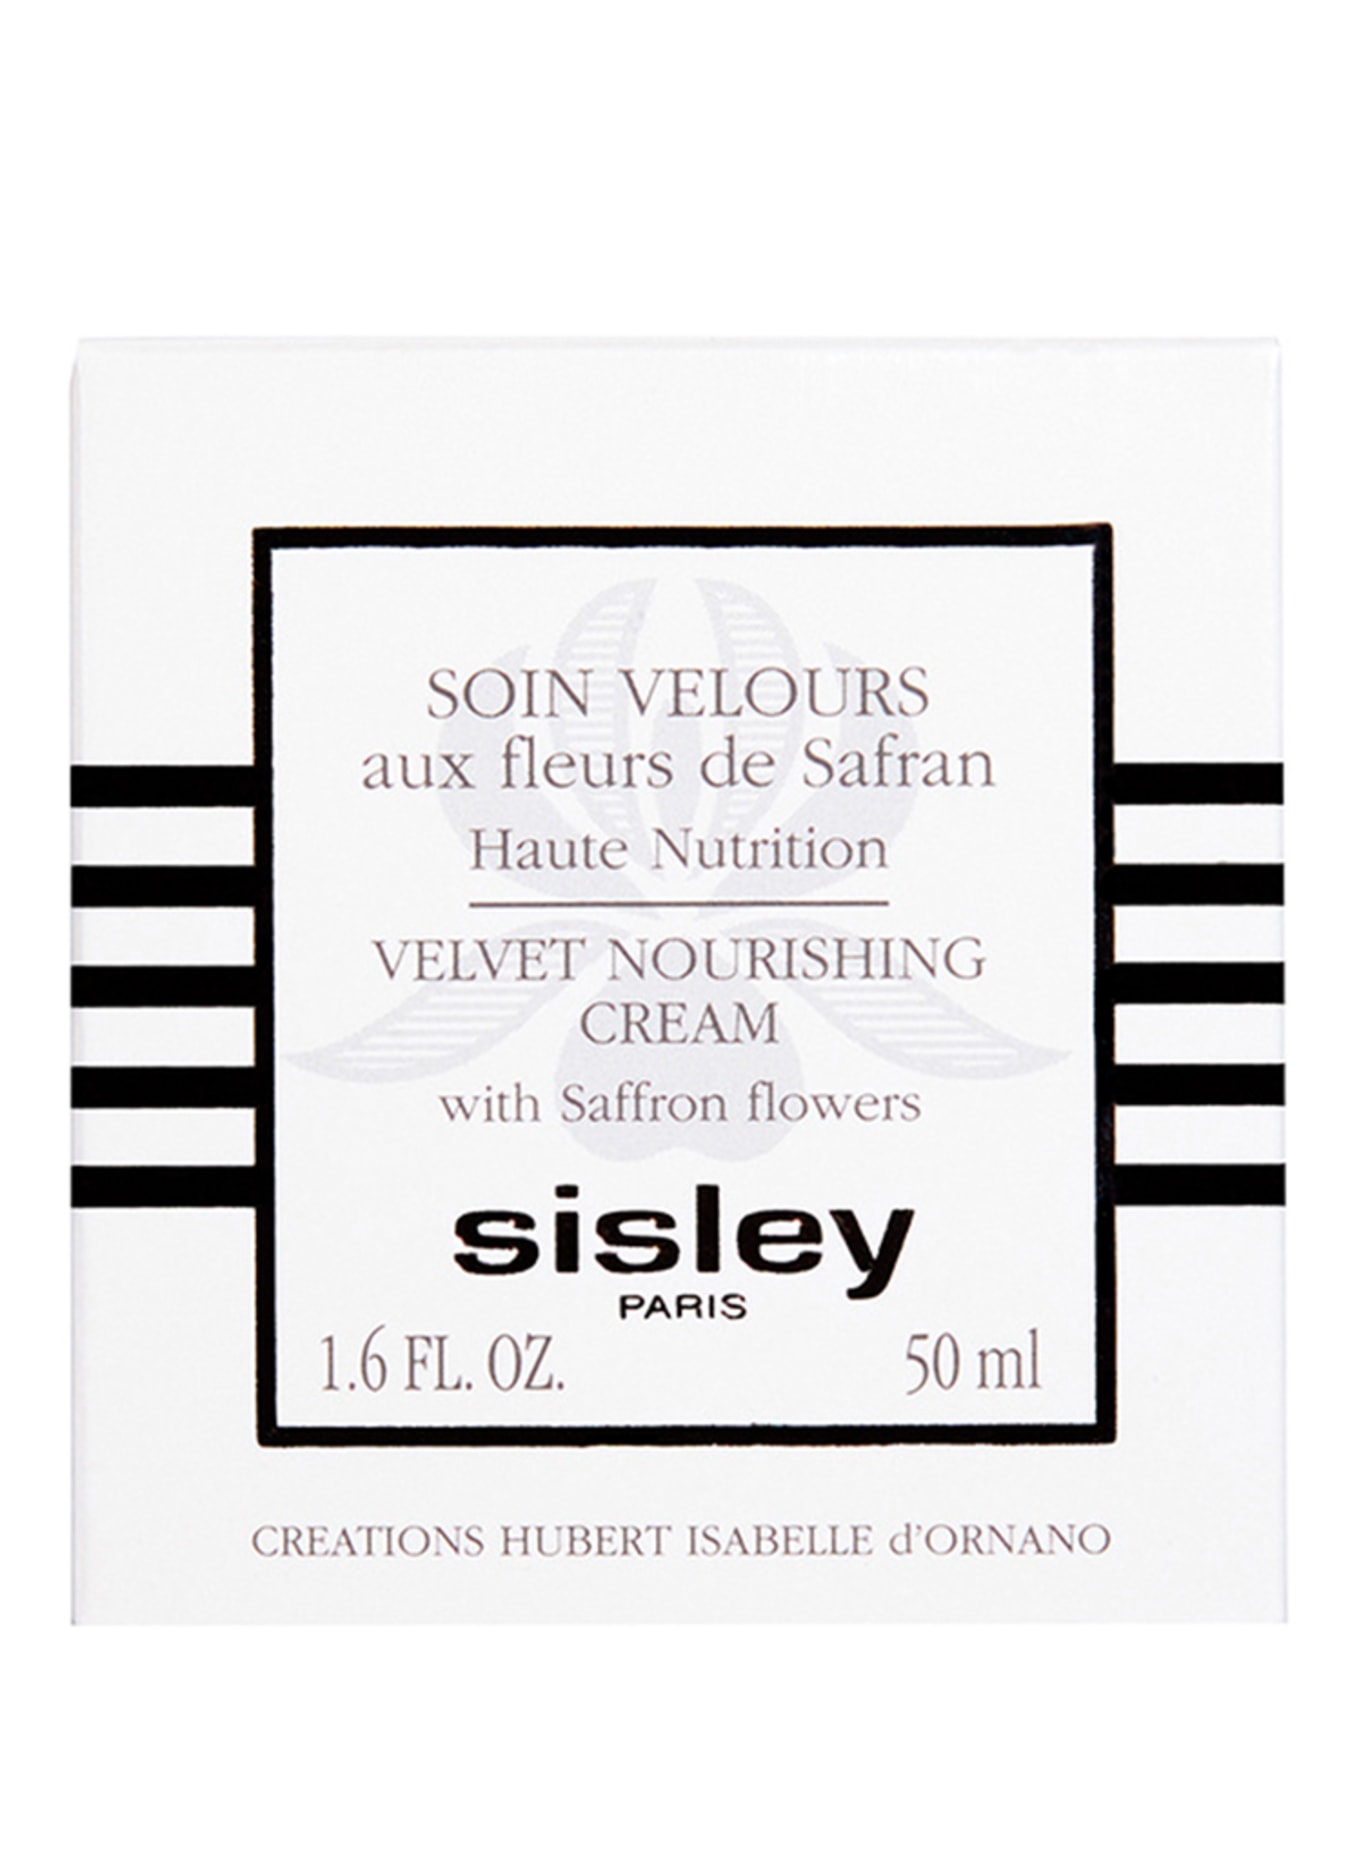 sisley Paris SOIN VELOURS AUX FLEURS DE SAFRAN (Obrázek 2)